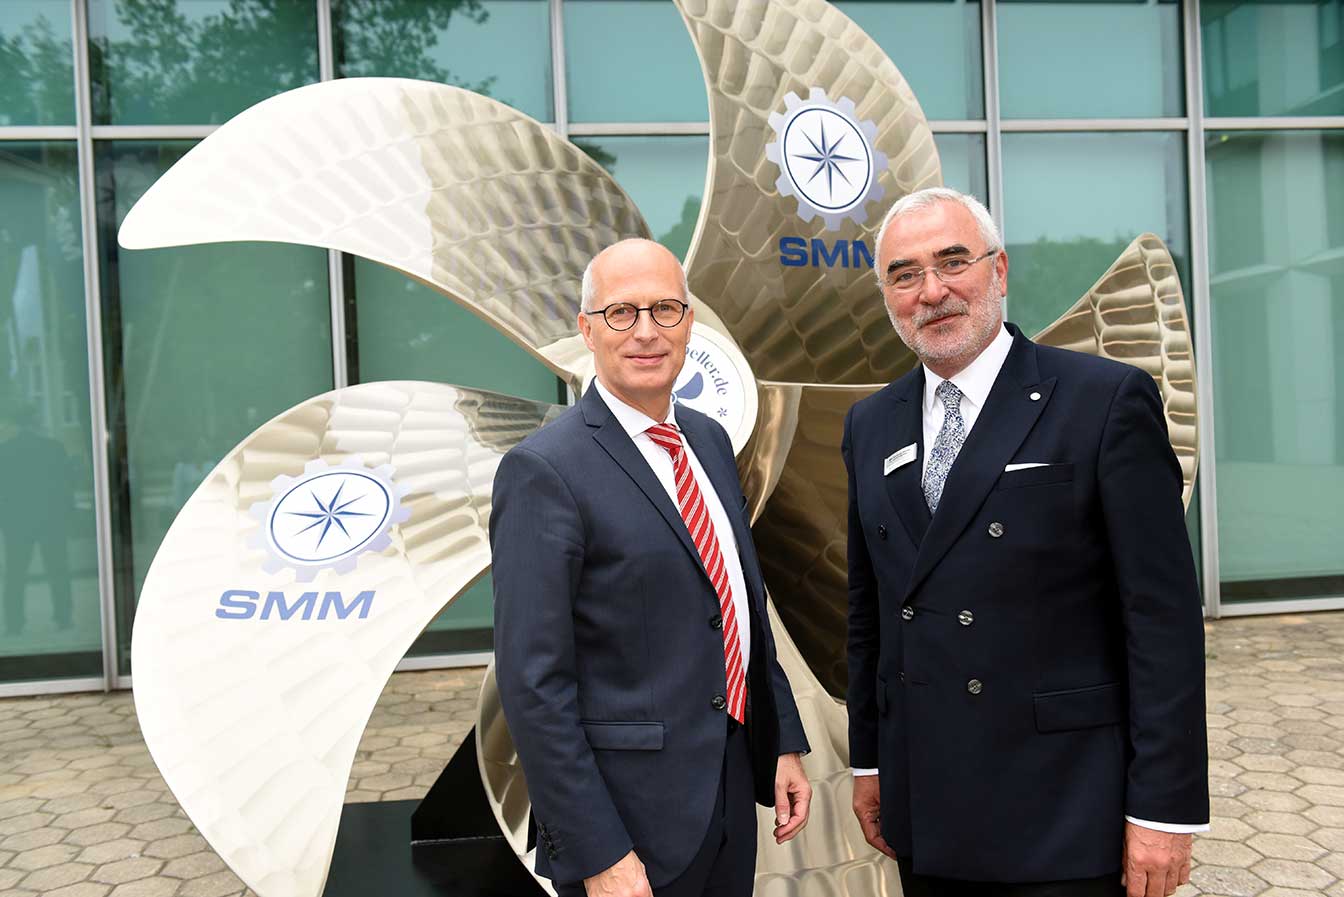 Dr. Peter Tschentscher, Hamburgs Erster Bürgermeister, und Bernd Aufderheide, Vorsitzender Geschäftsführer der HMC, vor der Schiffschraube am Eingang zur SMM auf dem Hamburger Messegelände